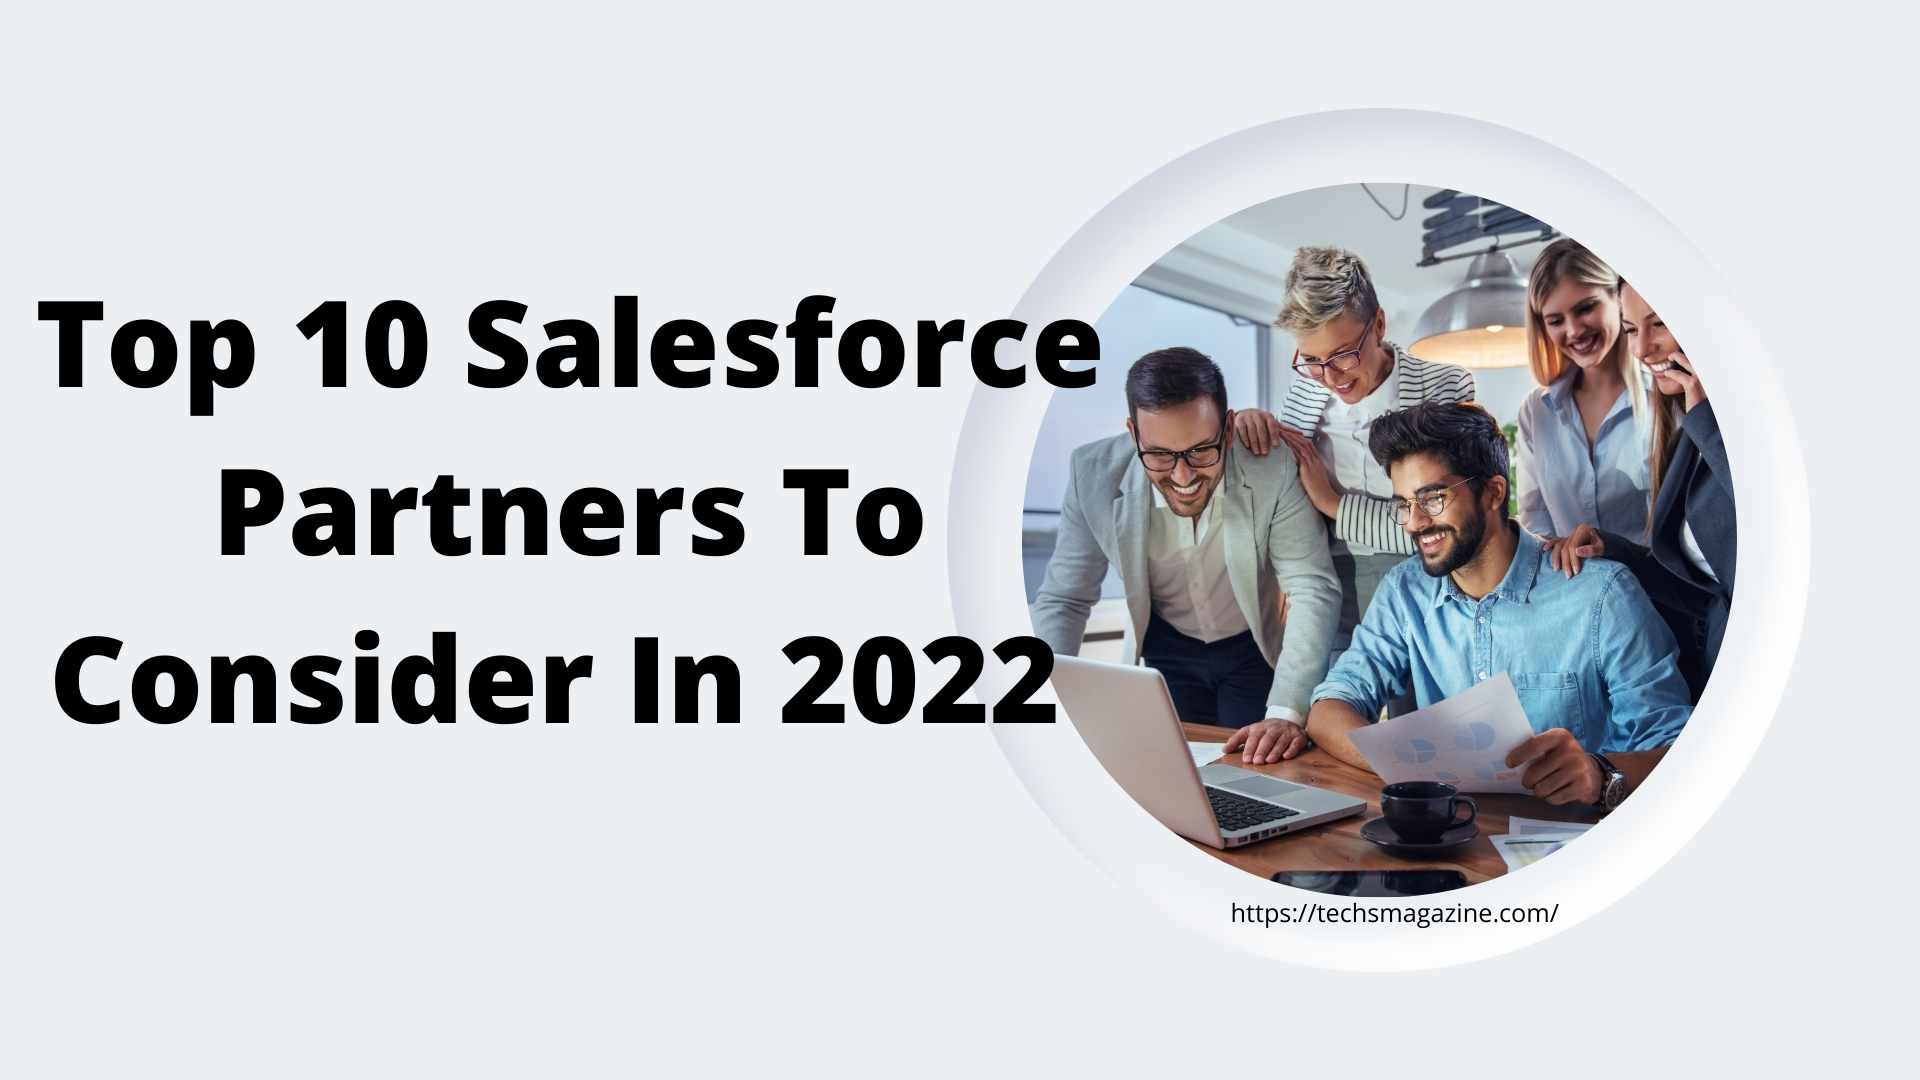 Top 10 Salesforce Partners To Consider In 2022 - Trending Update News